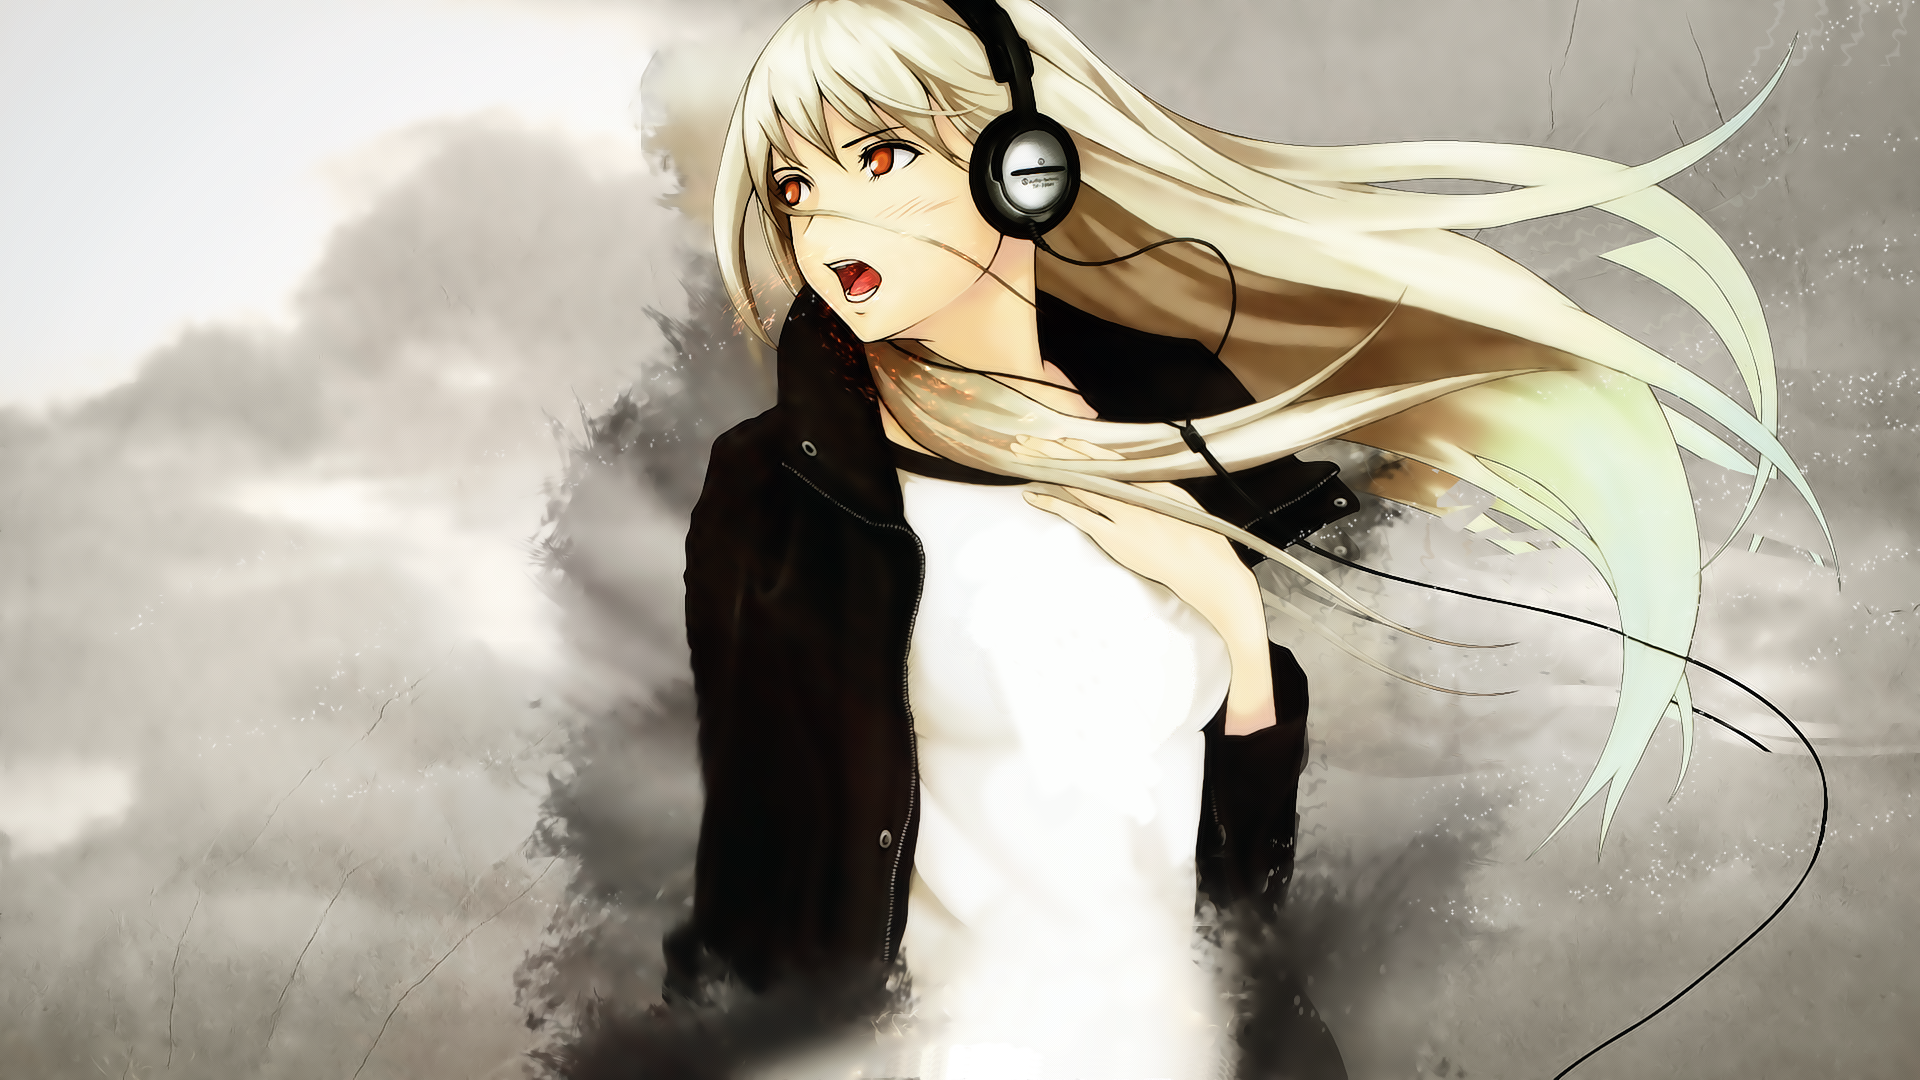 headphones, music, artwork, anime, anime girls - desktop wallpaper